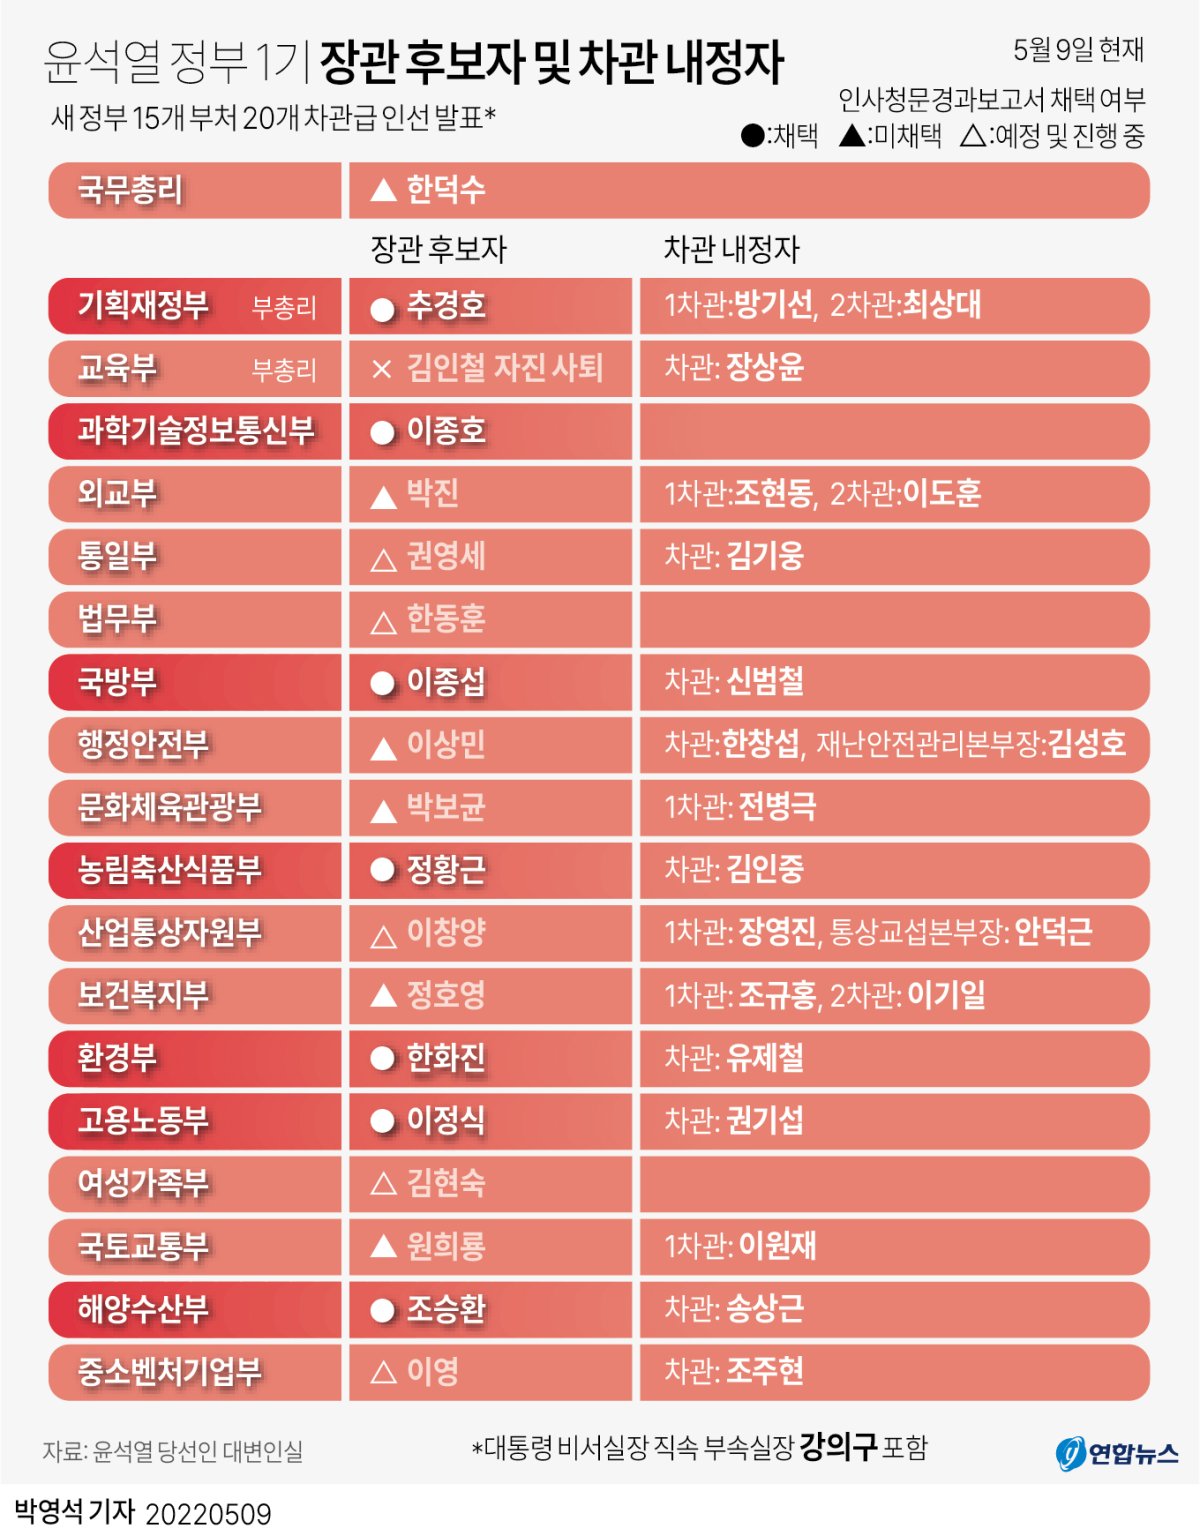 [그래픽] 윤석열 정부 1기 장관 후보자 및 차관 내정자